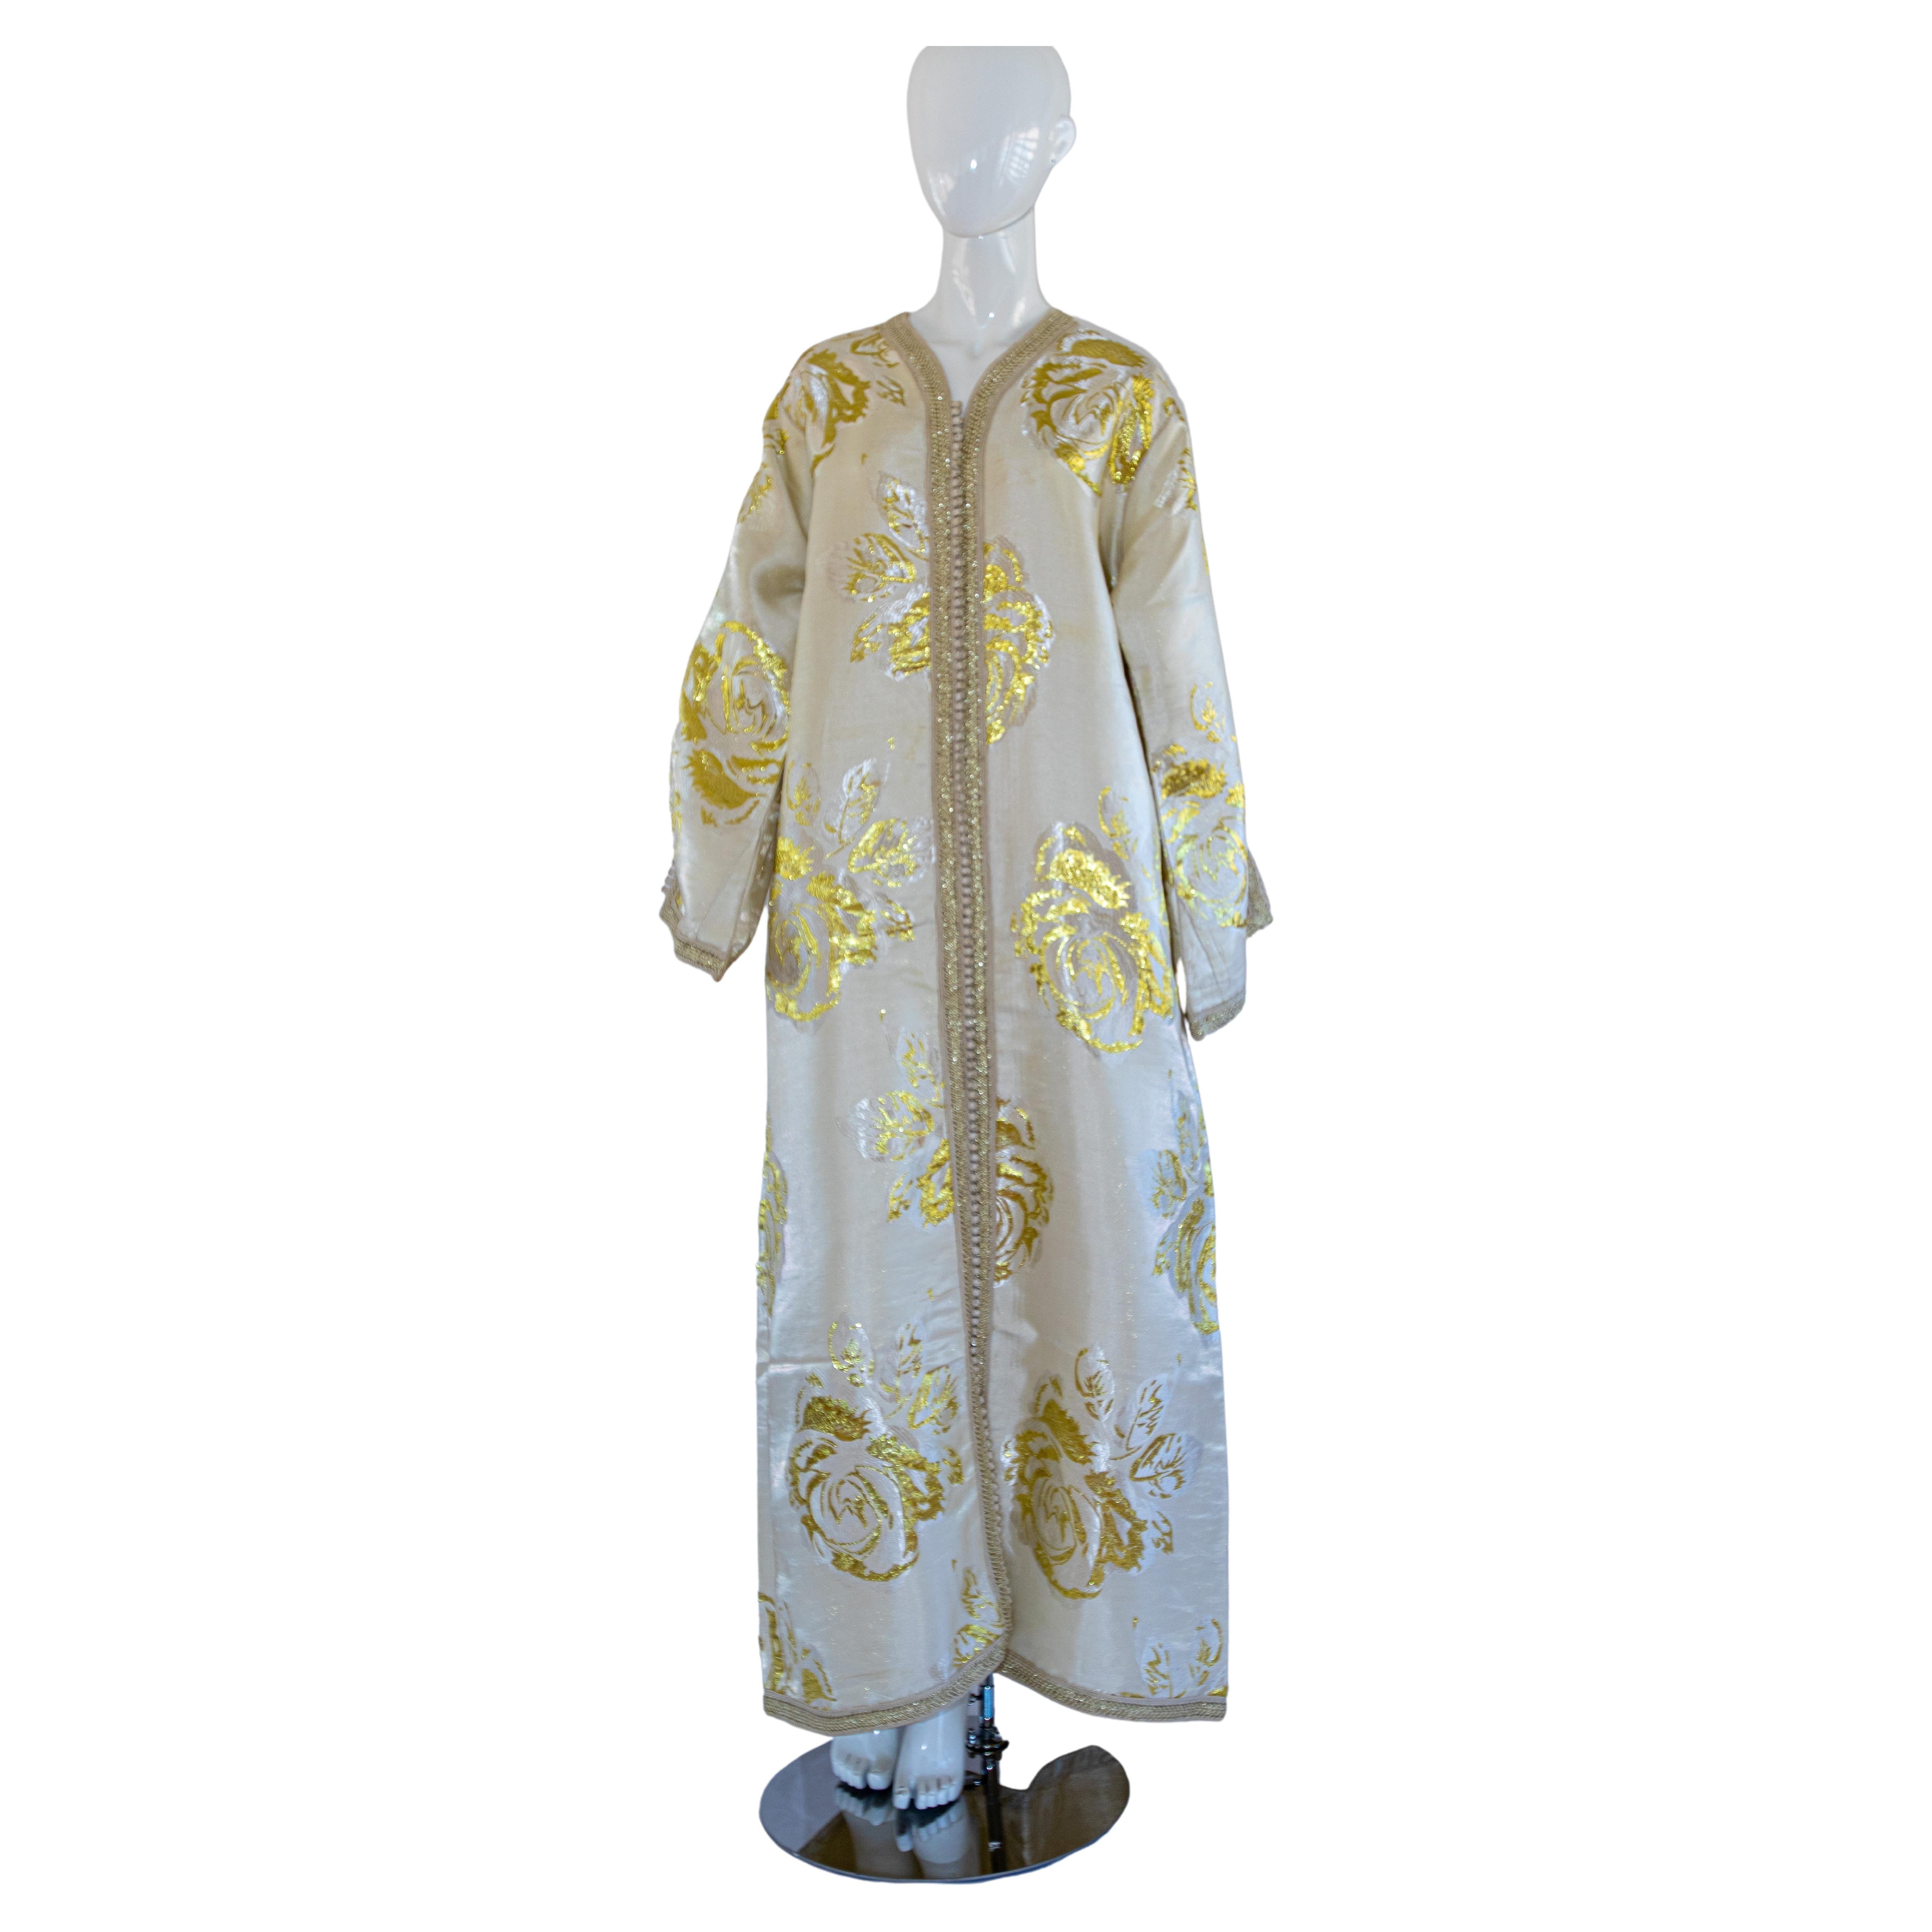 Vintage élégant caftan marocain blanc et or lame métallique brocart floral,
vers les années 1970.
Confectionné au Maroc, il est taillé pour une coupe décontractée et des manches larges.
Cette longue robe maxi kaftan vintage est brodée et embellie